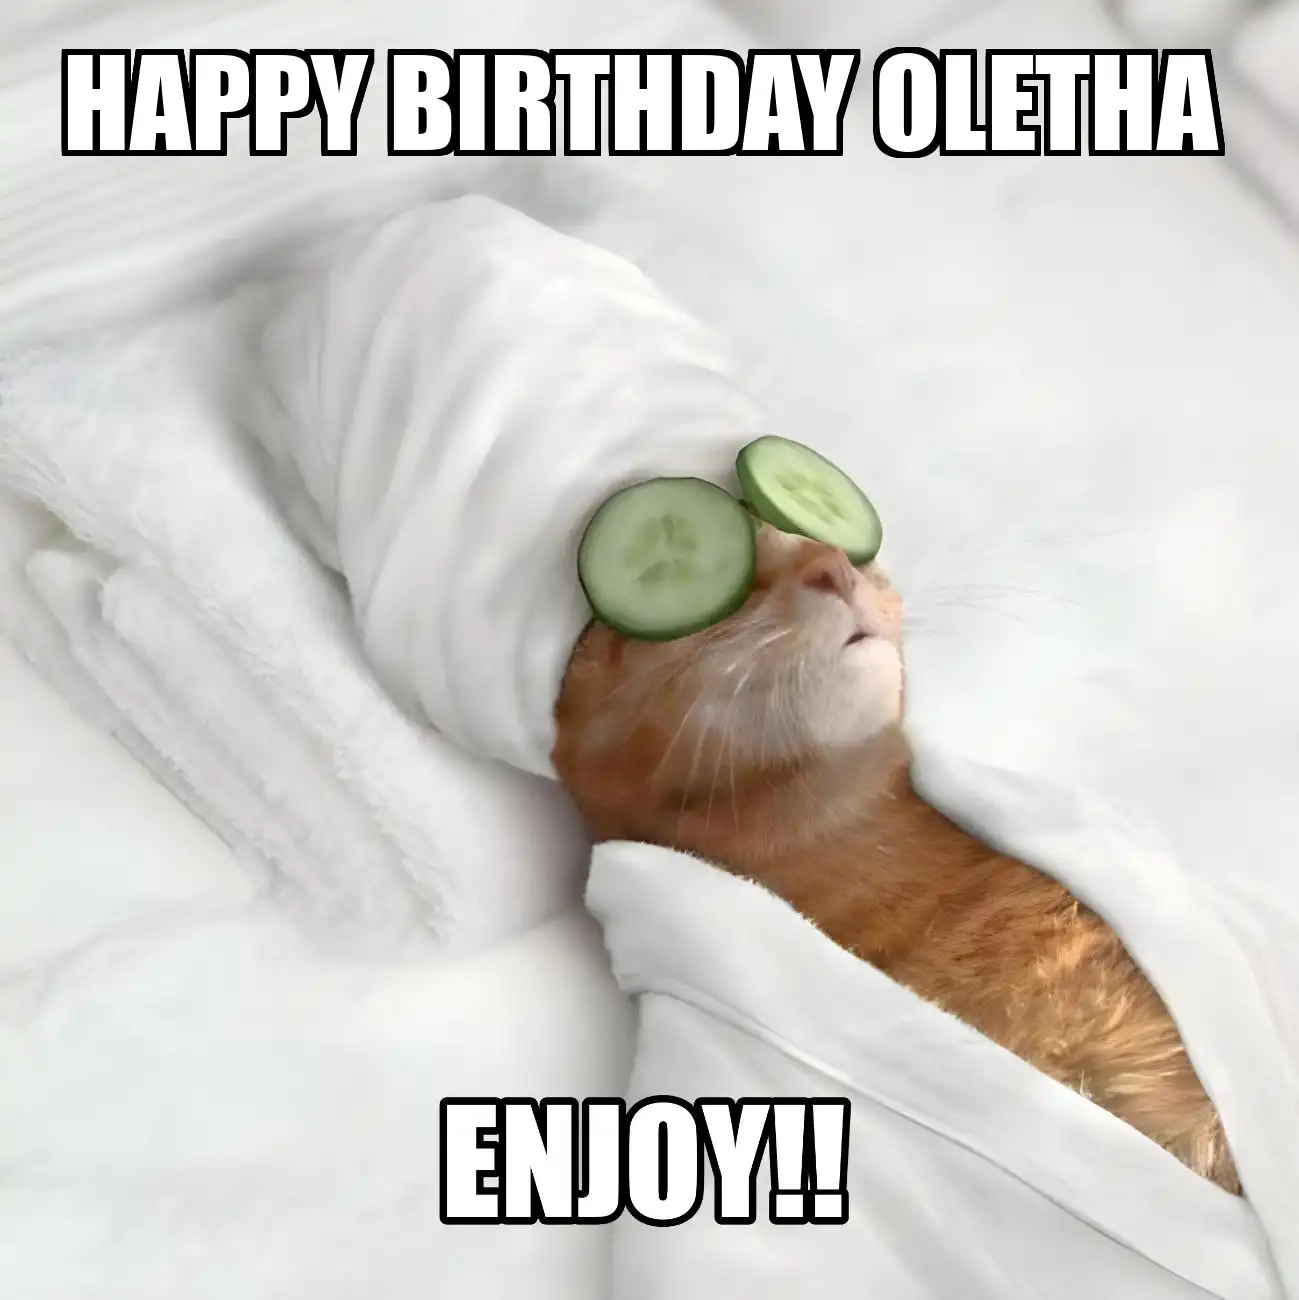 Happy Birthday Oletha Enjoy Cat Meme